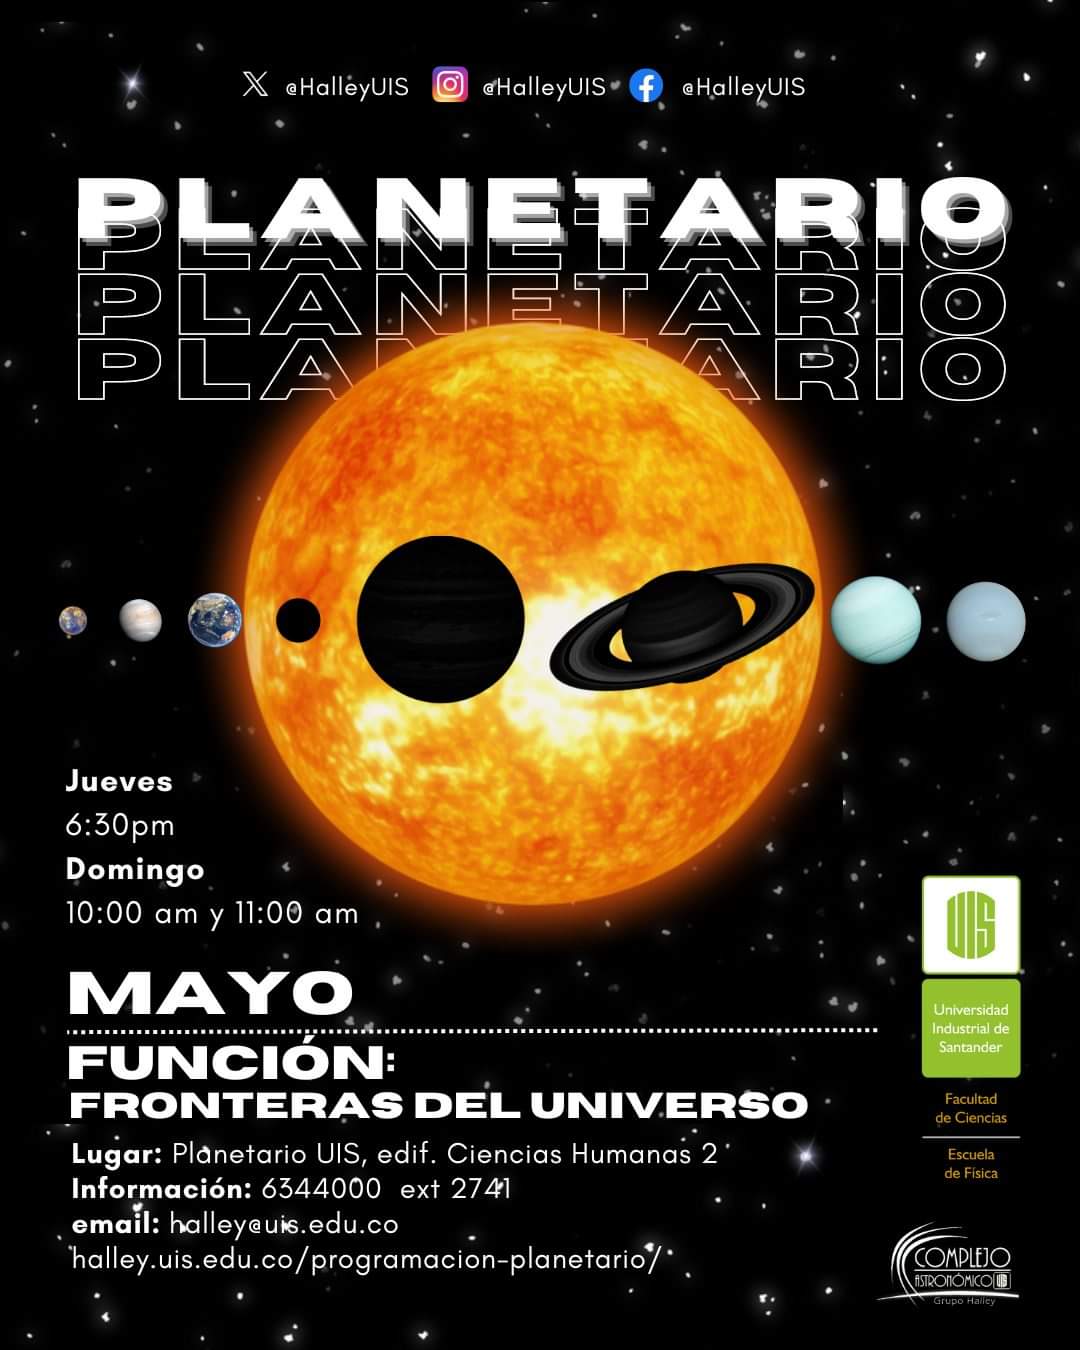 Imagen con el título del evento acompañado por una imagen del sistema solar